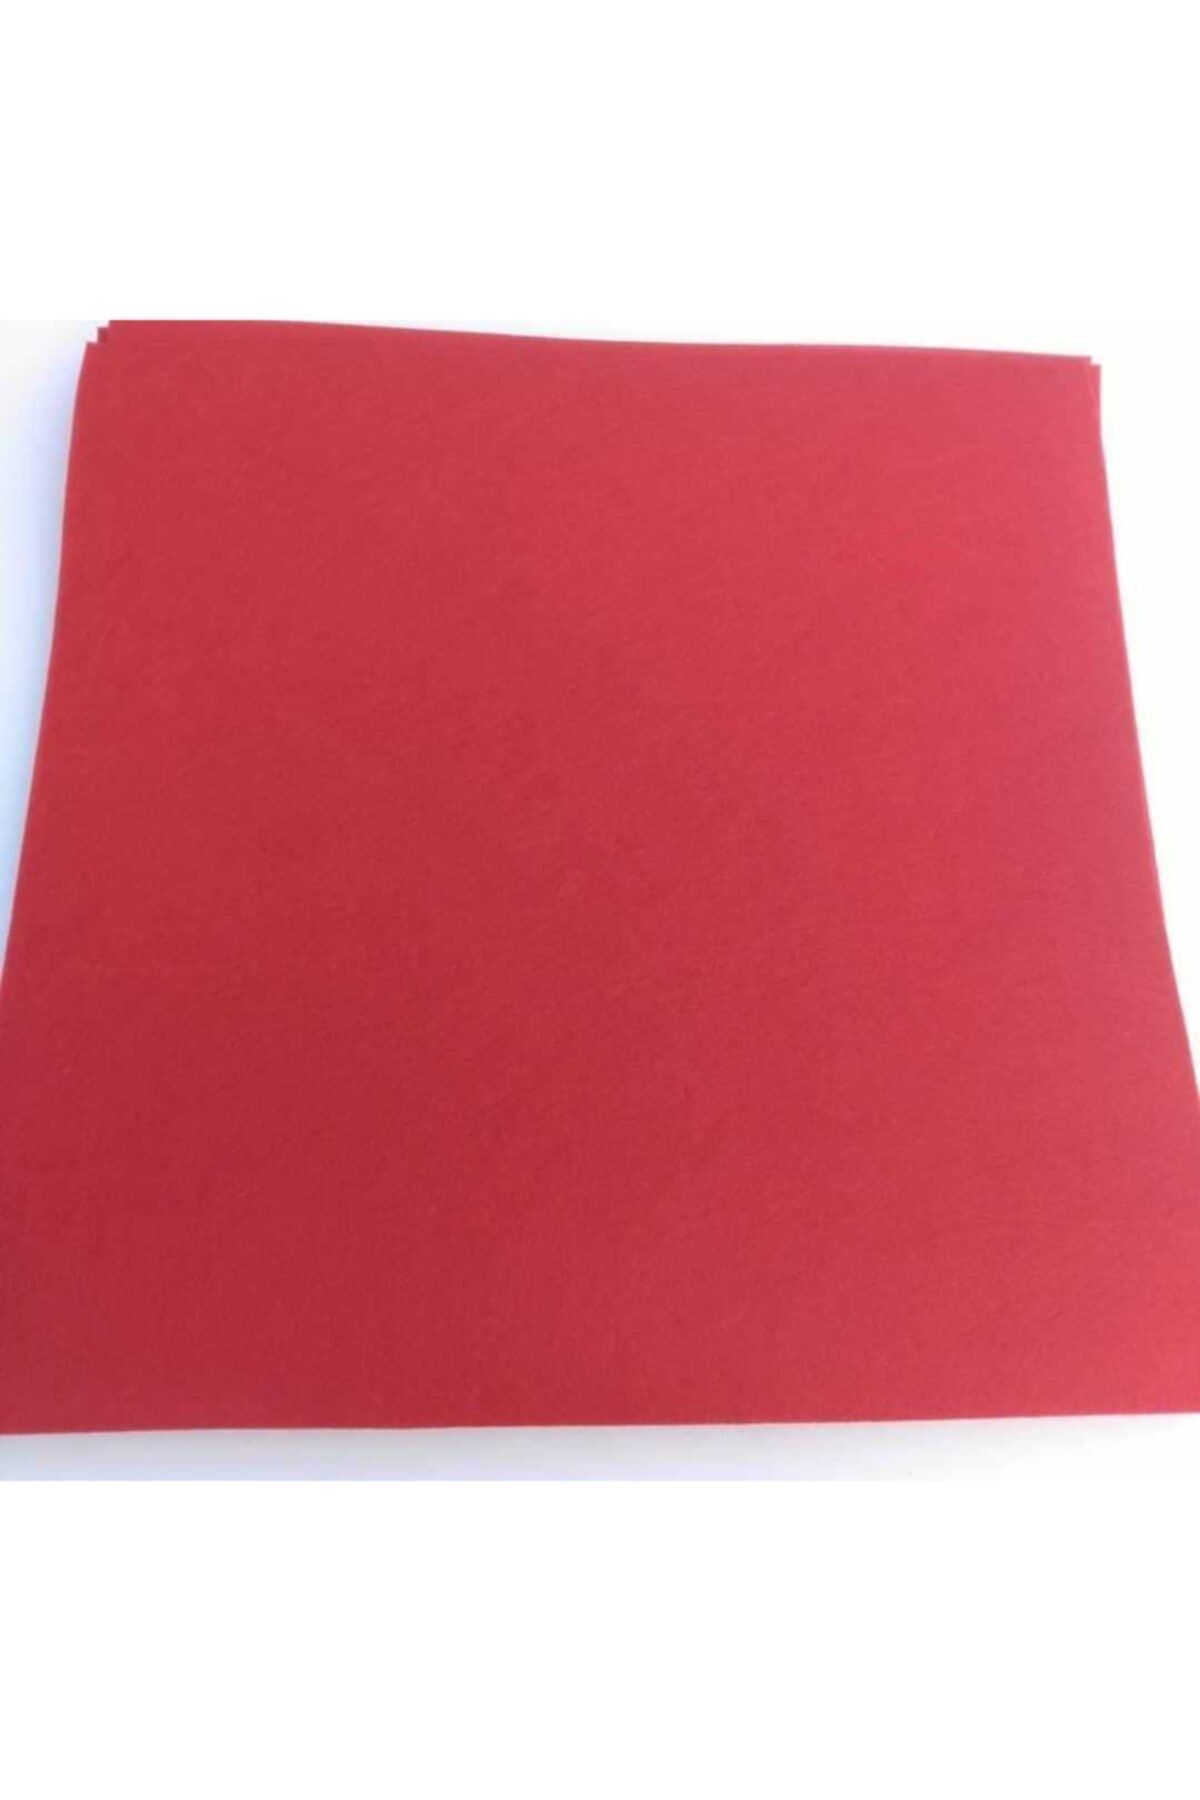 ByOzras Kalın Keçe Kumaş Kırmızı - Hobi Malzemeleri 3mm (50 X 50 CM)aynı Gün Hızlı Kargo